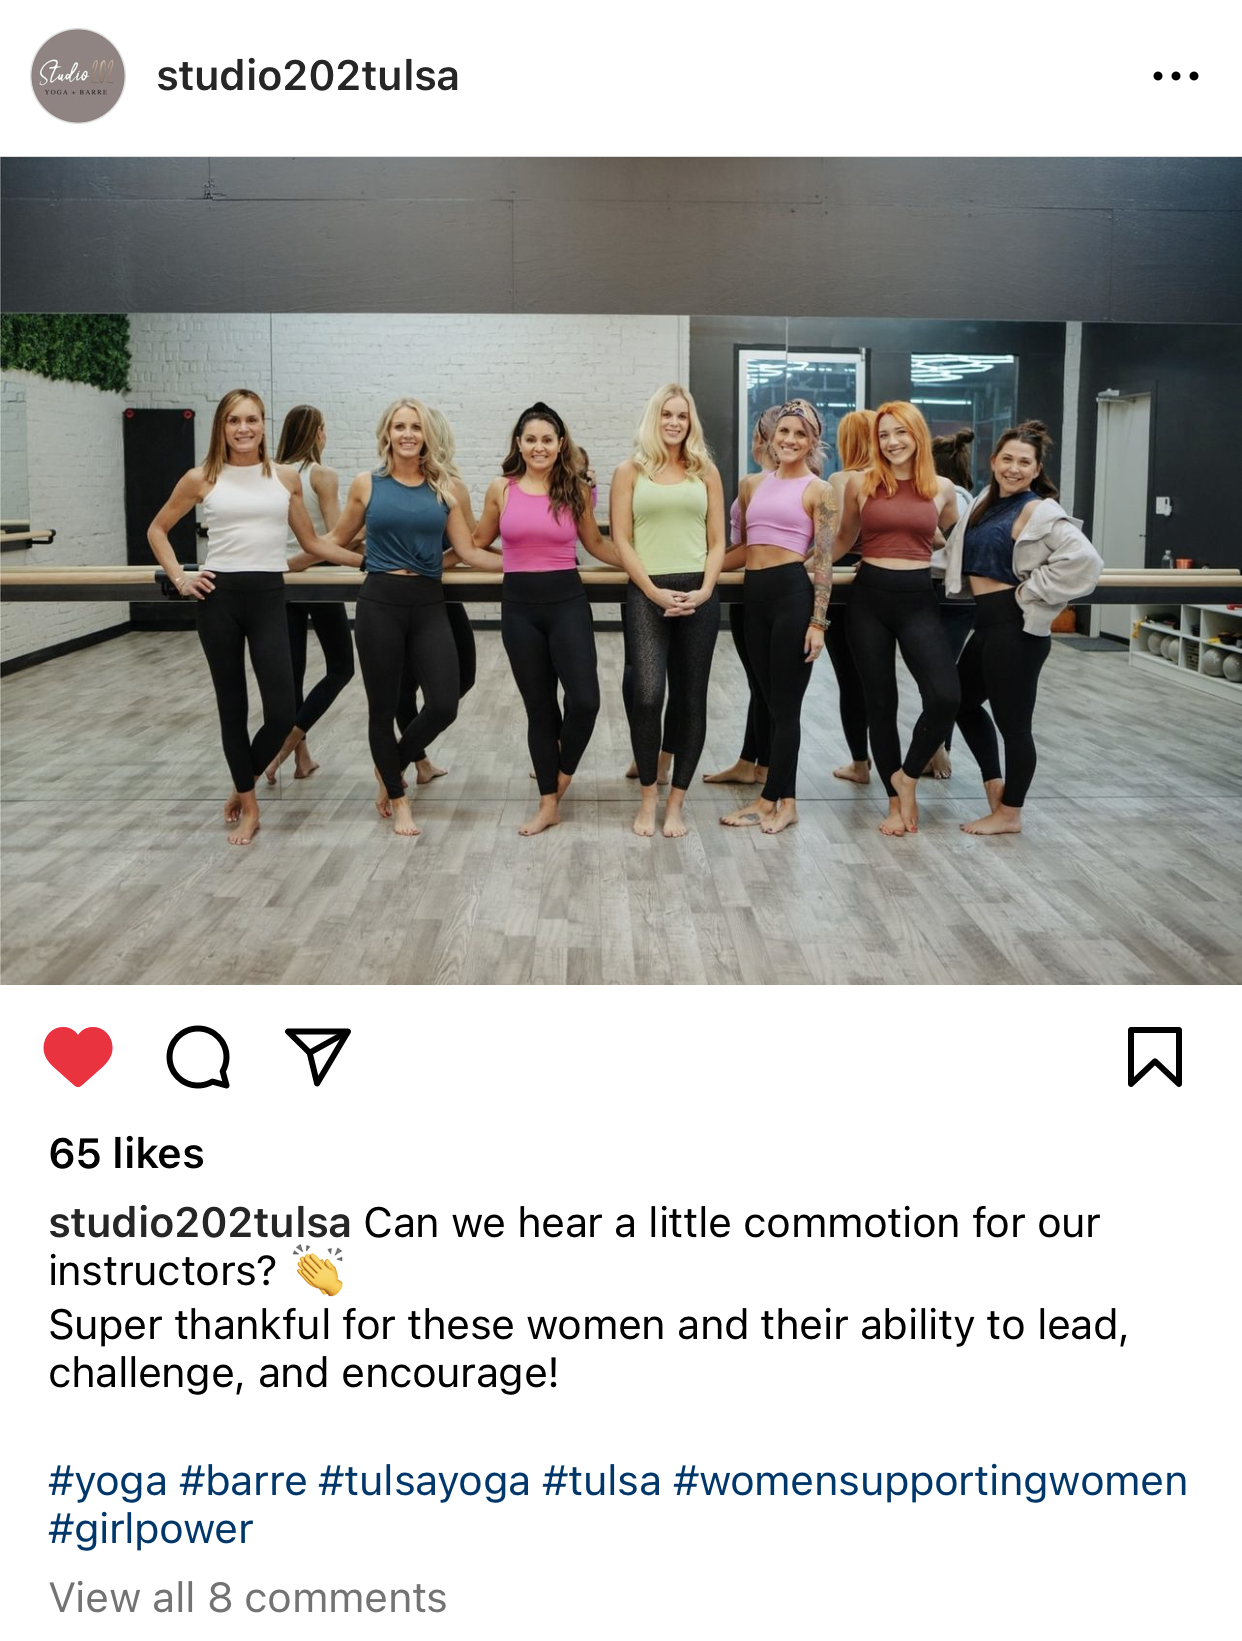 A social media post for a Tulsa company Studio 202